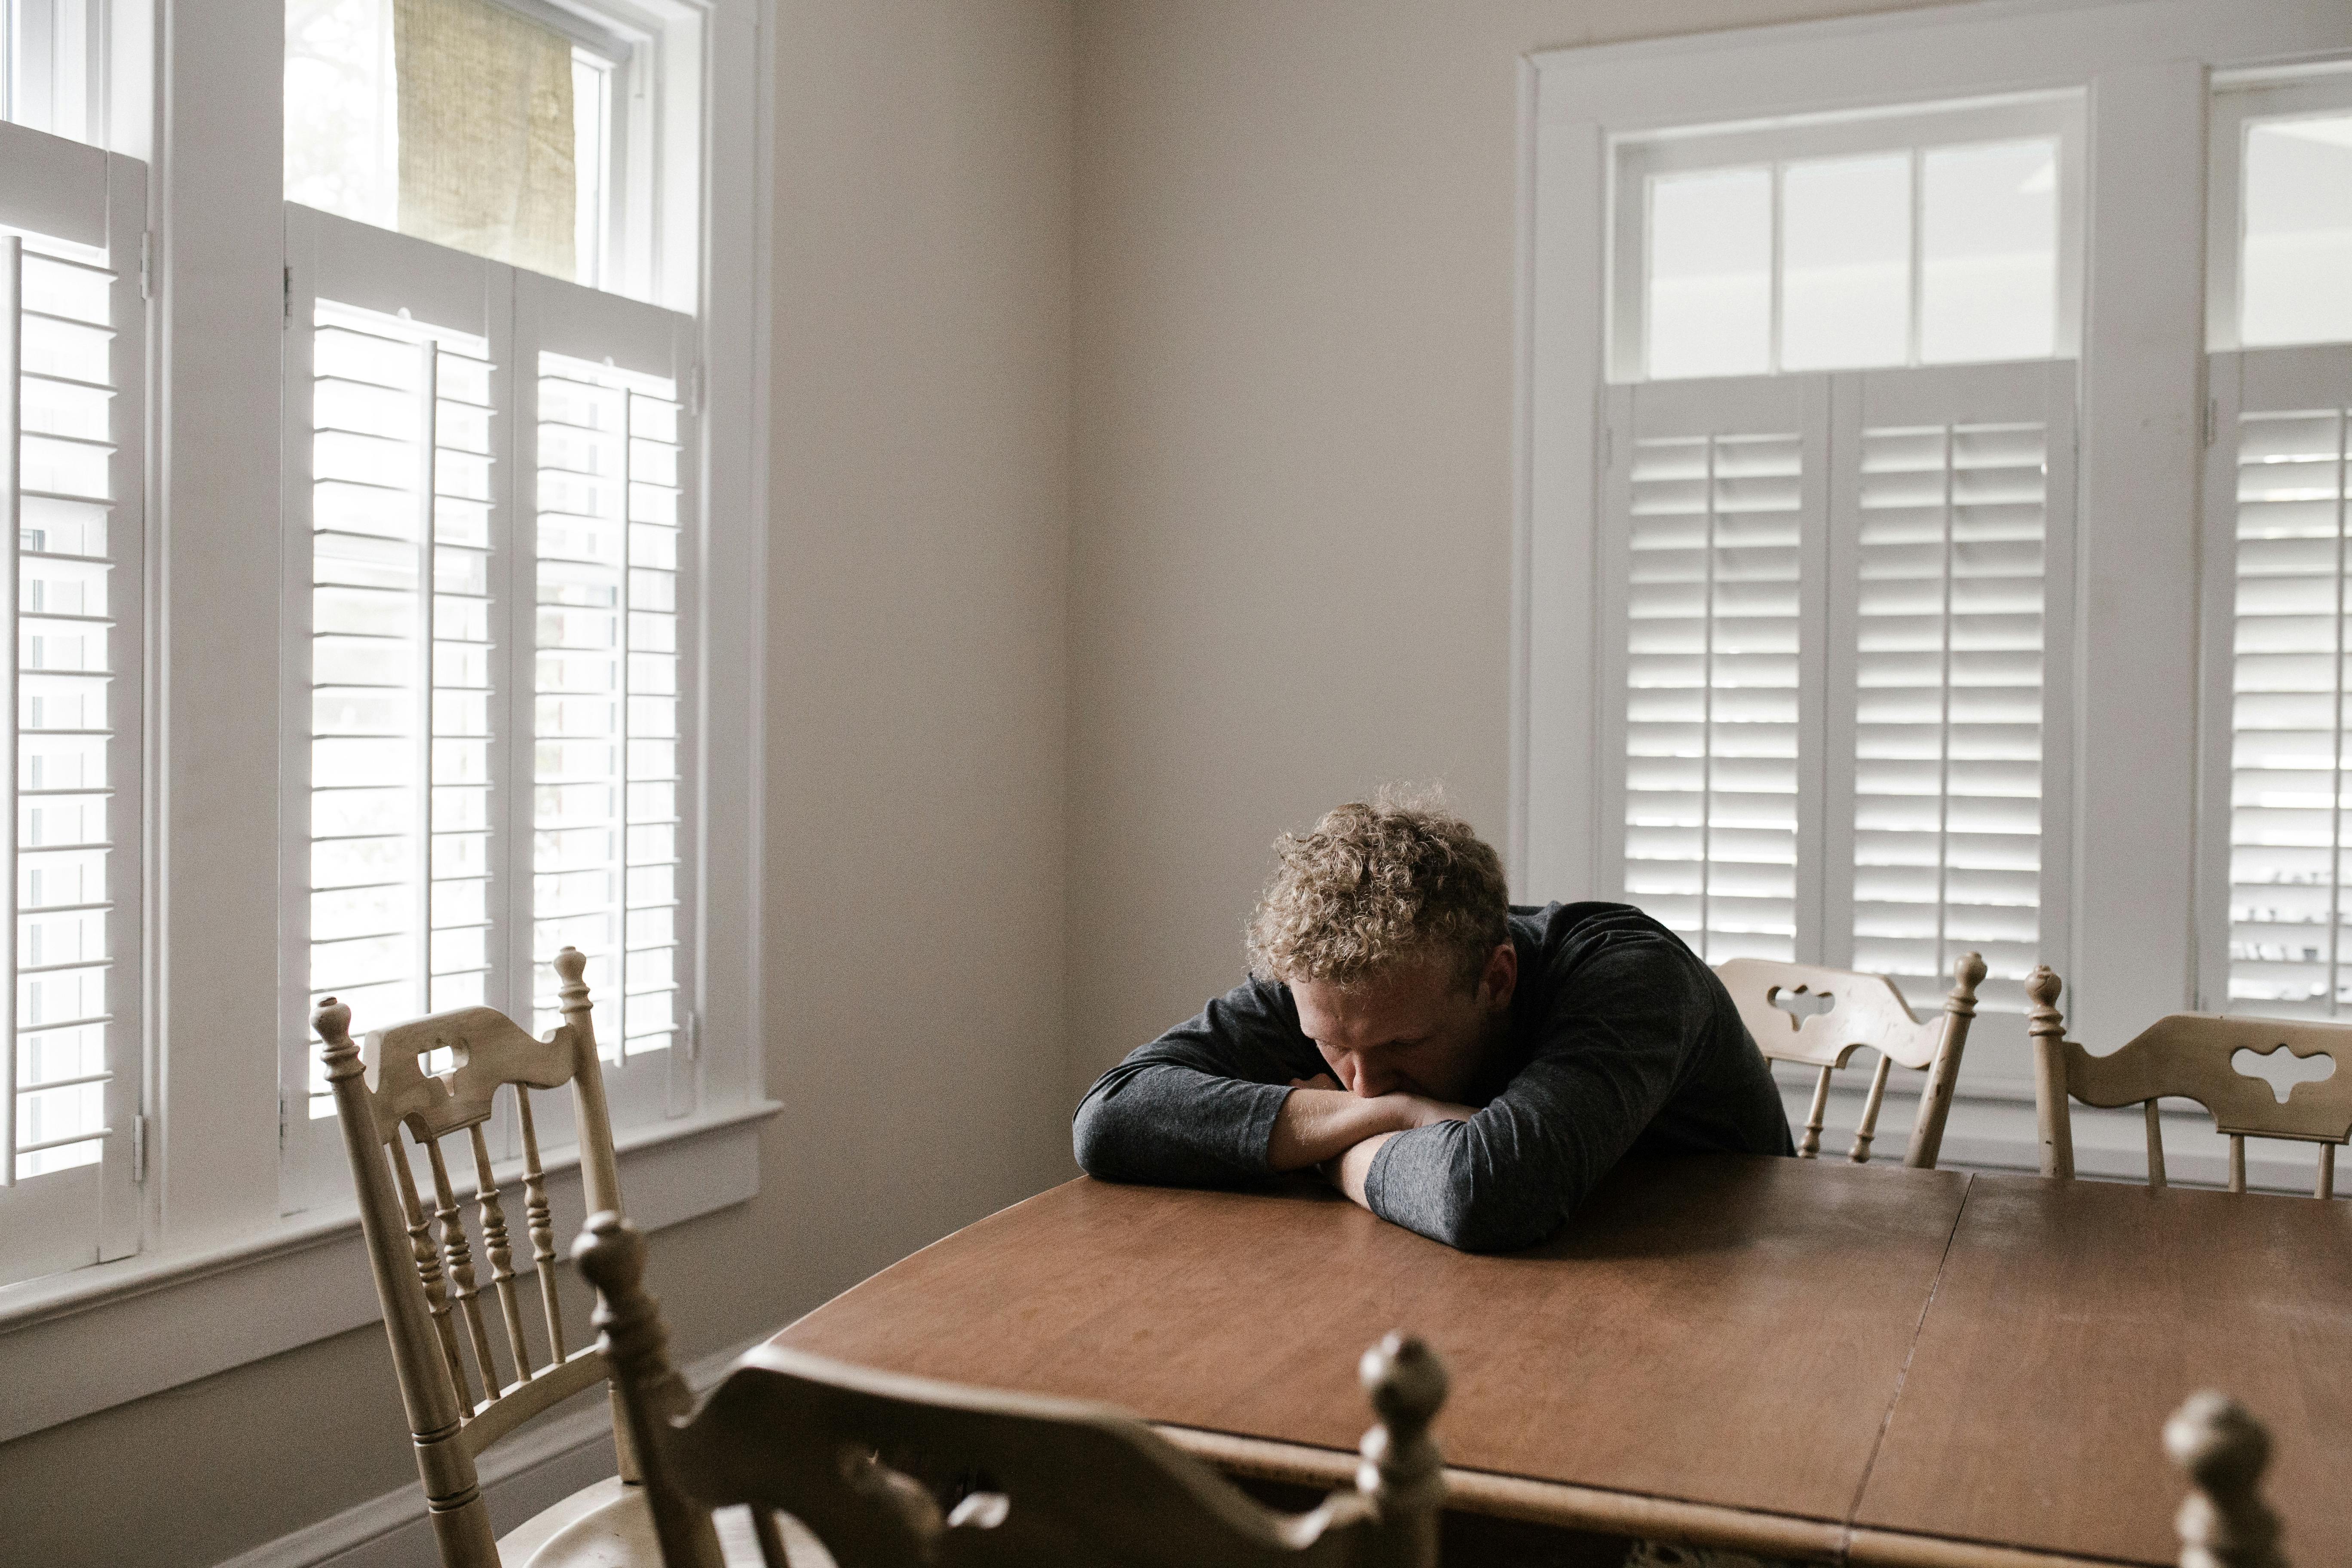 Un hombre solitario tumbado en una mesa | Fuente: Pexels